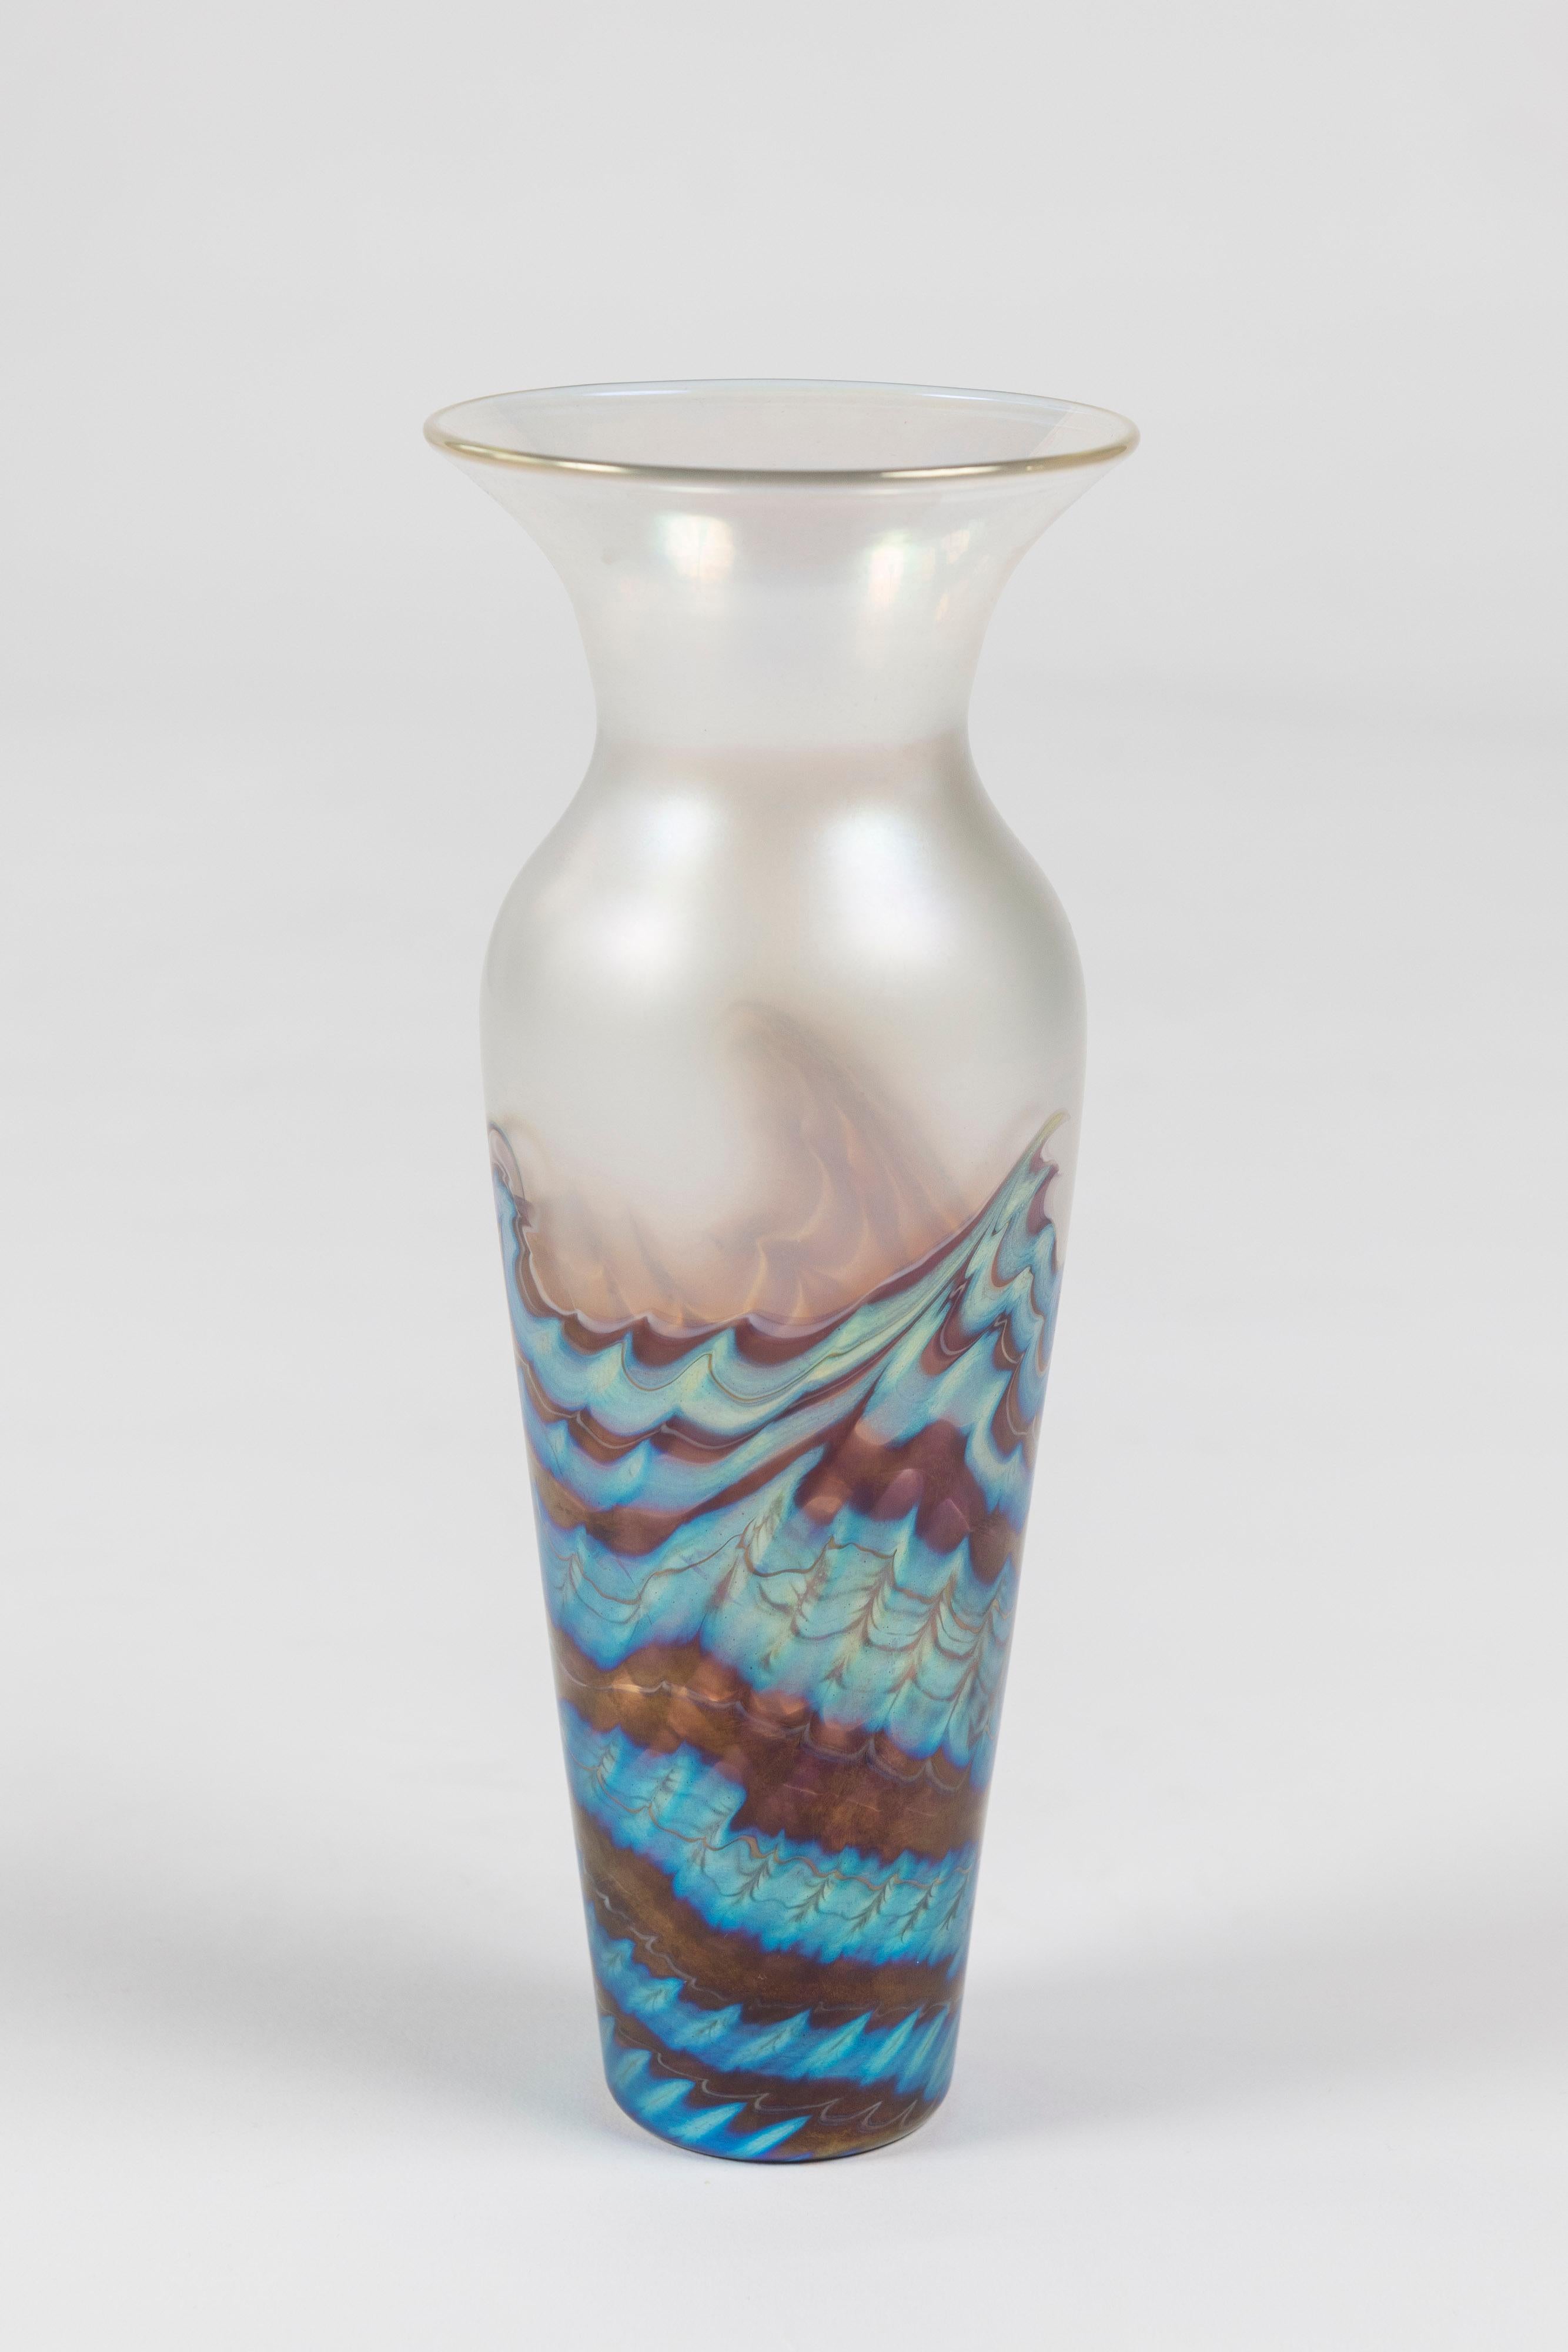 Joli vase en verre d'art à bord effilé et à motif de vague opalescent, fabriqué en Californie et signé par Lundberg Studios. Magnifique seul ou en groupe. 